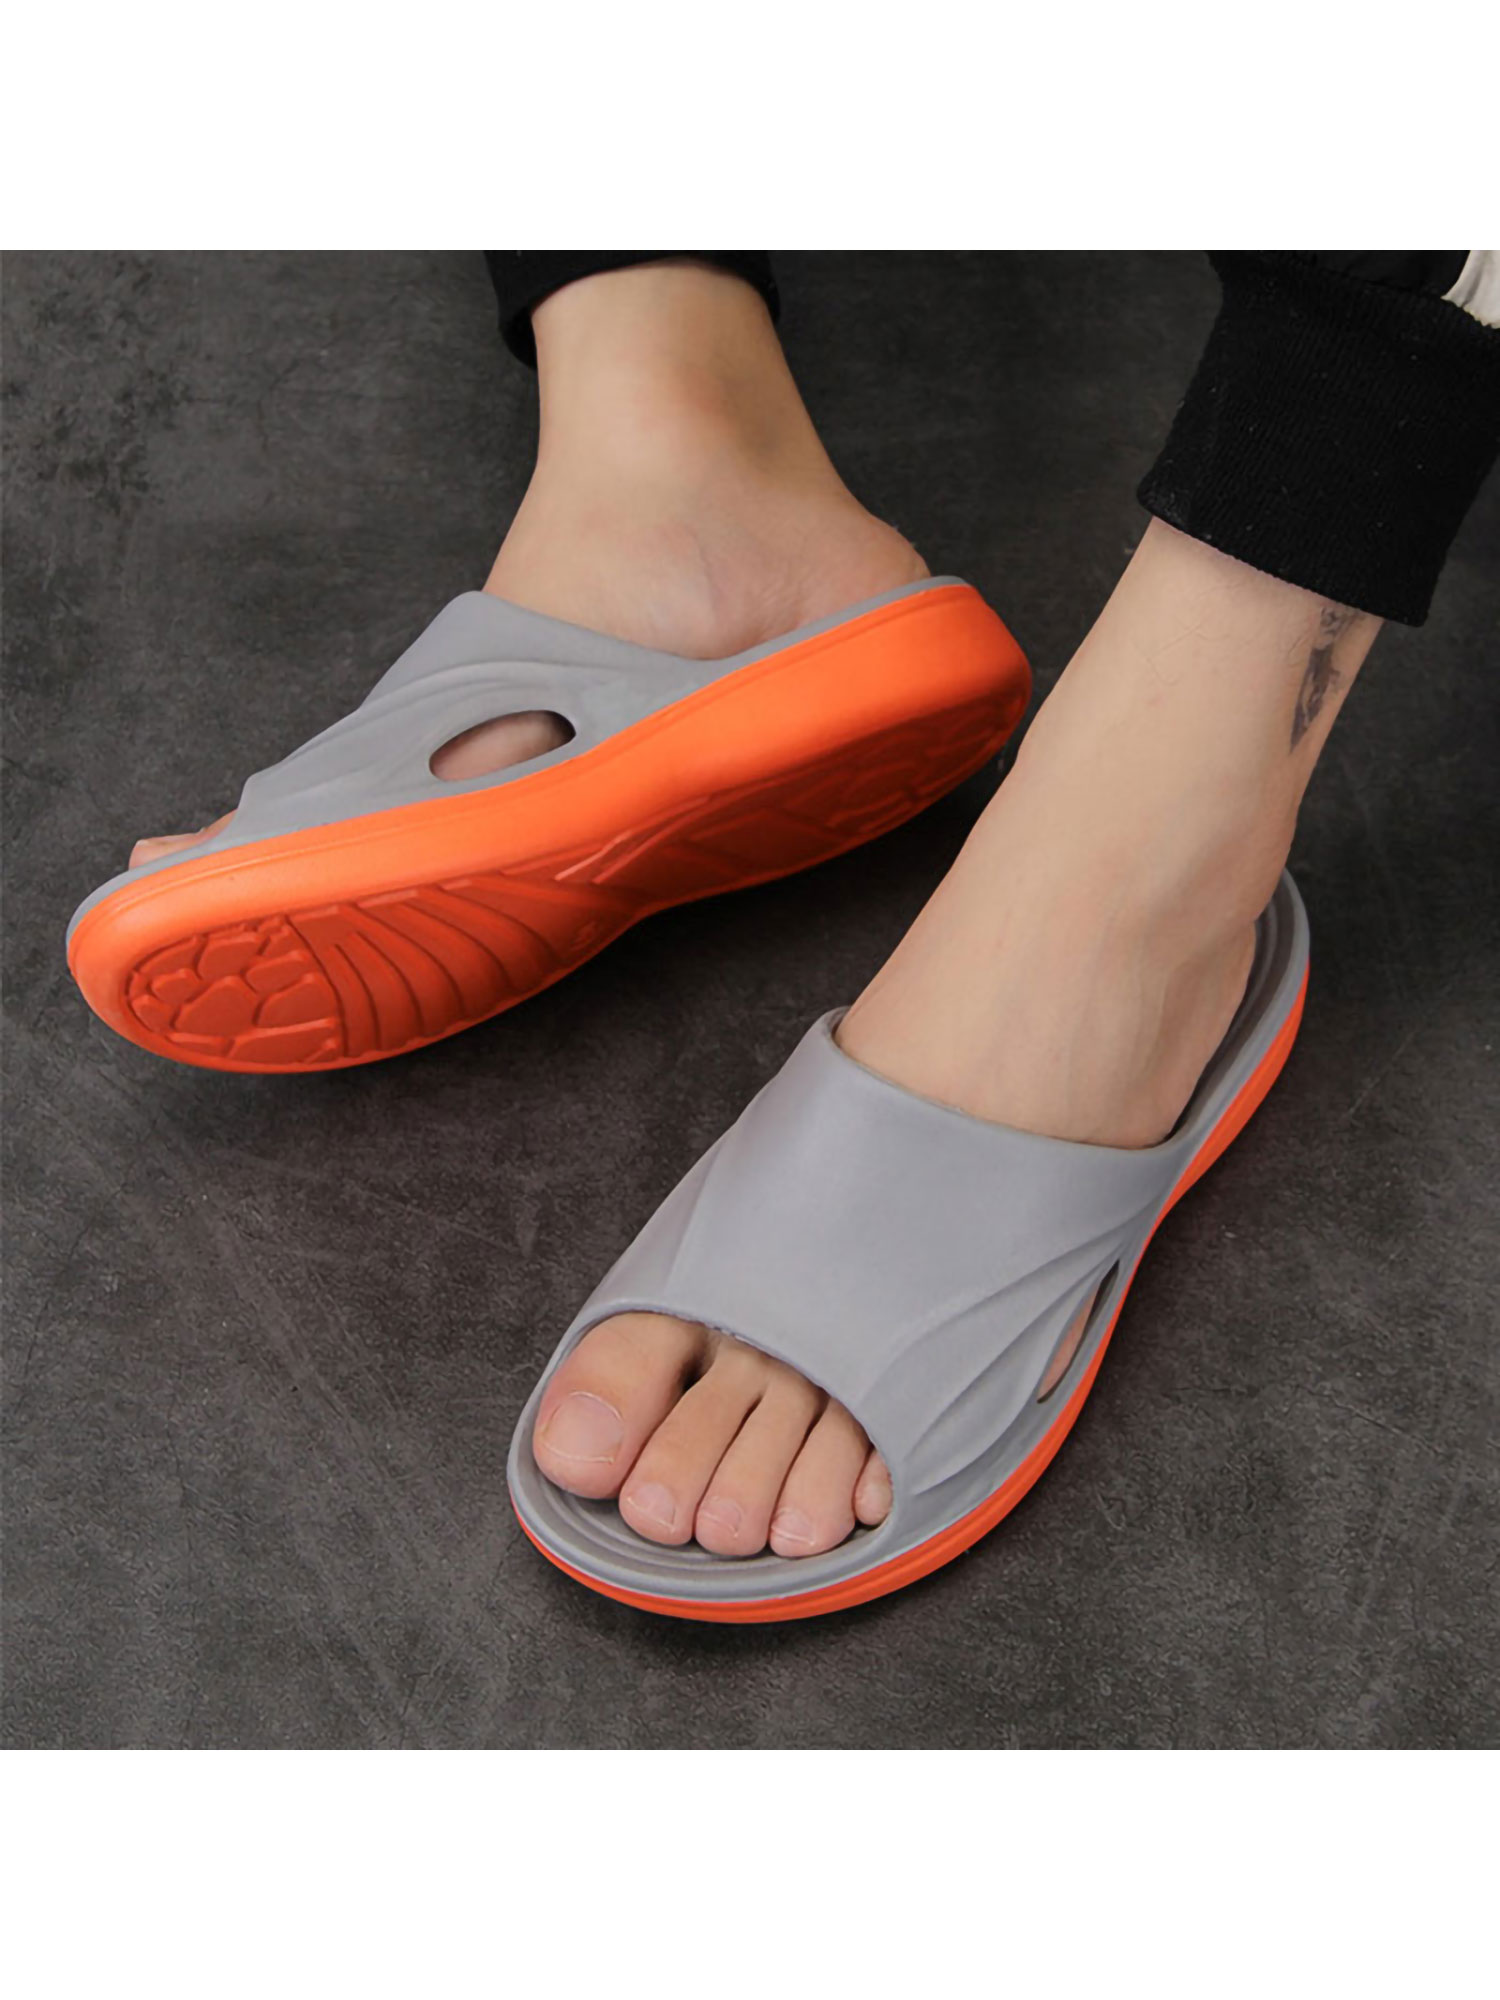 Mens Slip On Sport Slide Sandals Flip Flop Shower Shoes House Slippers Pool R4L4